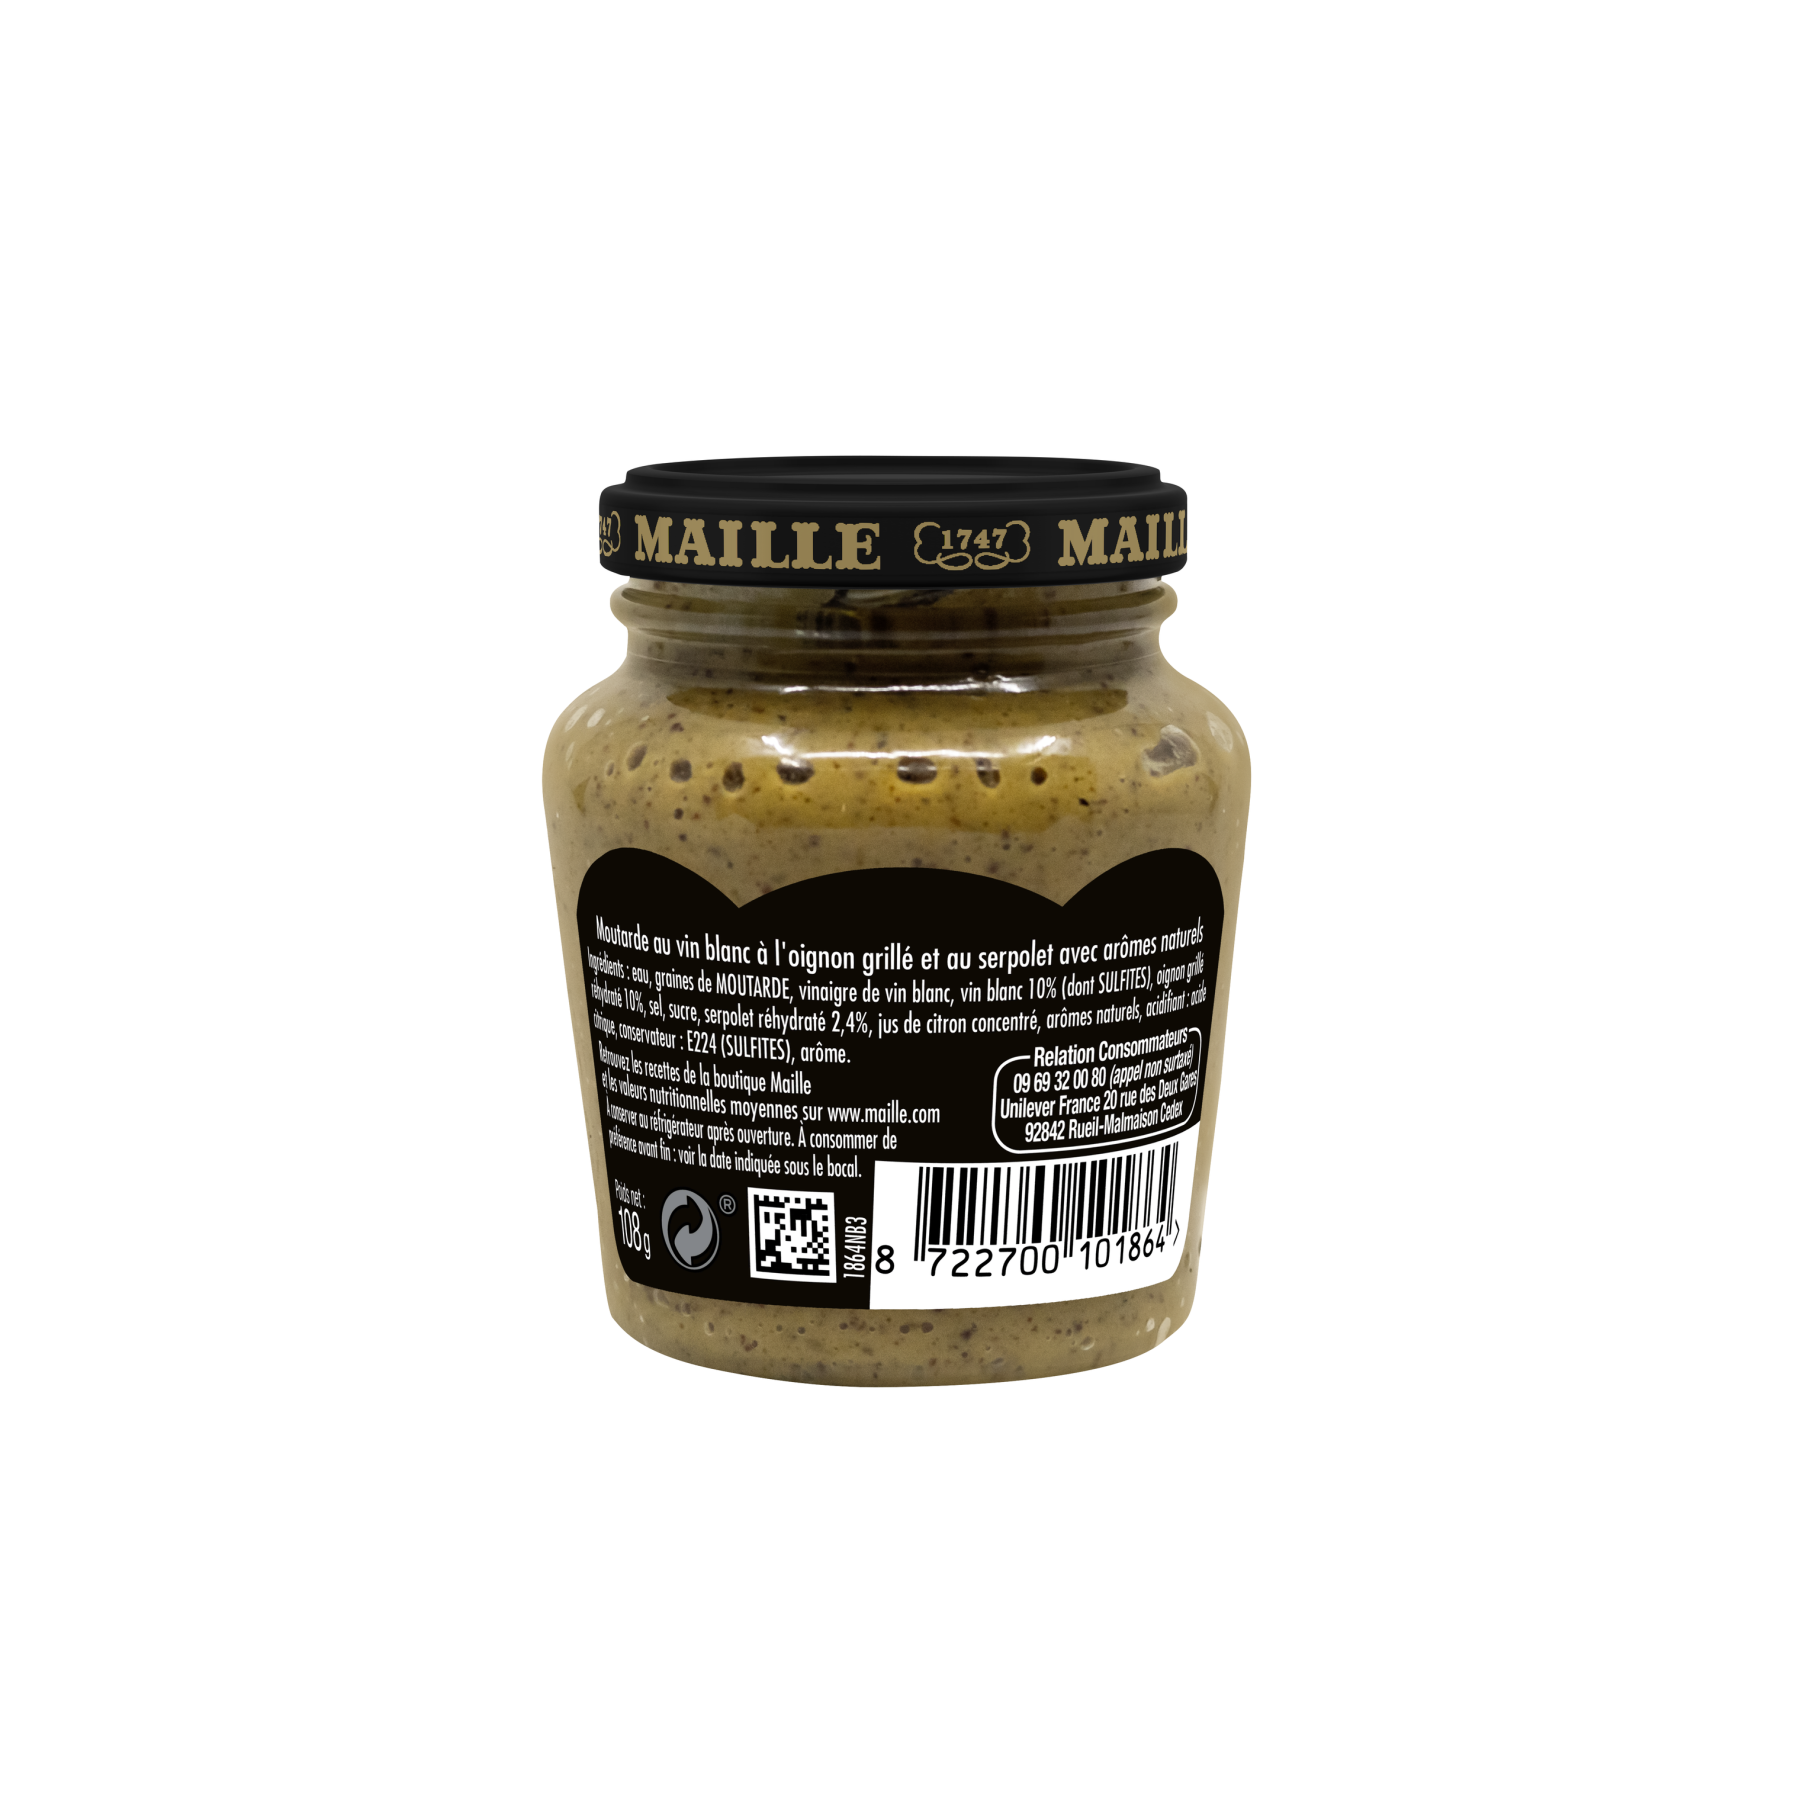 Maille - Moutarde au vin blanc, oignon grille et serpolet, 108 g, arrière